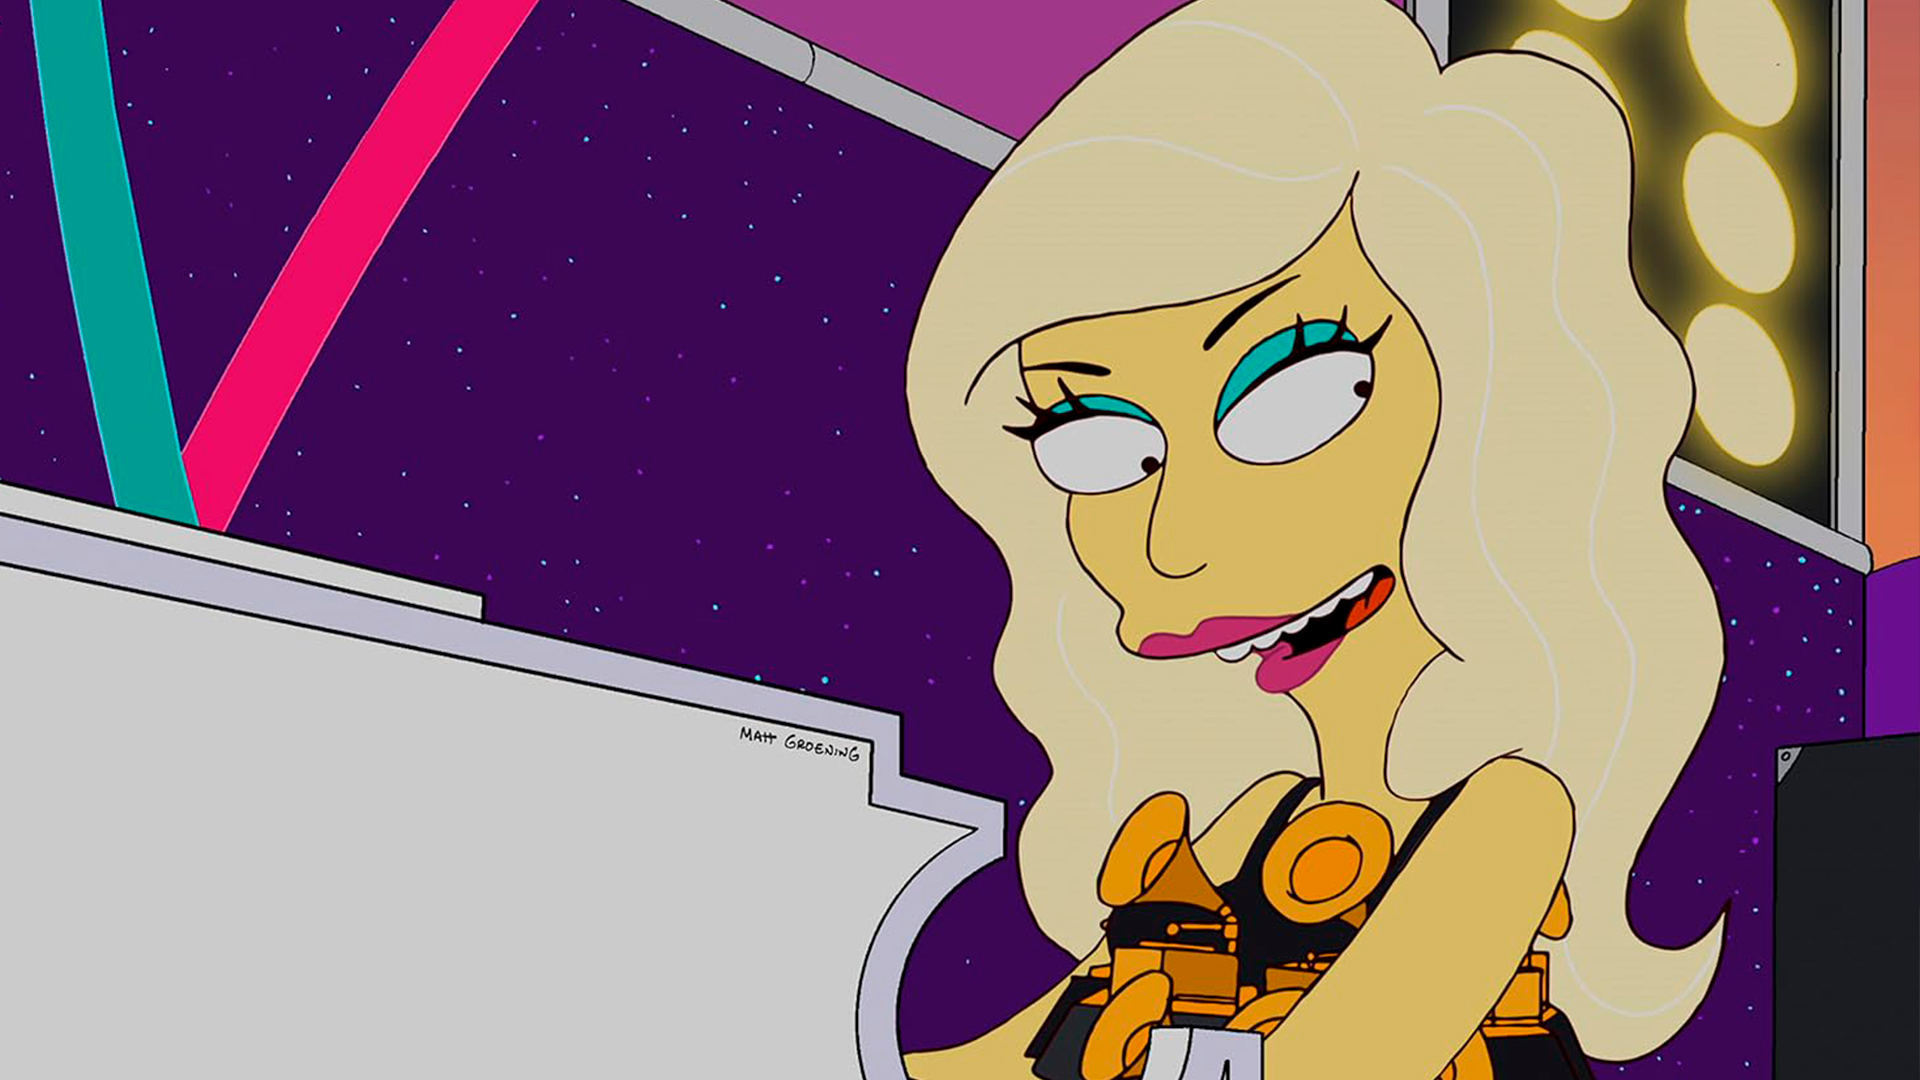 Los Simpson desperdiciaron cada oportunidad con este episodio de Lagy Gaga (por lo tanto, está peor calificado)